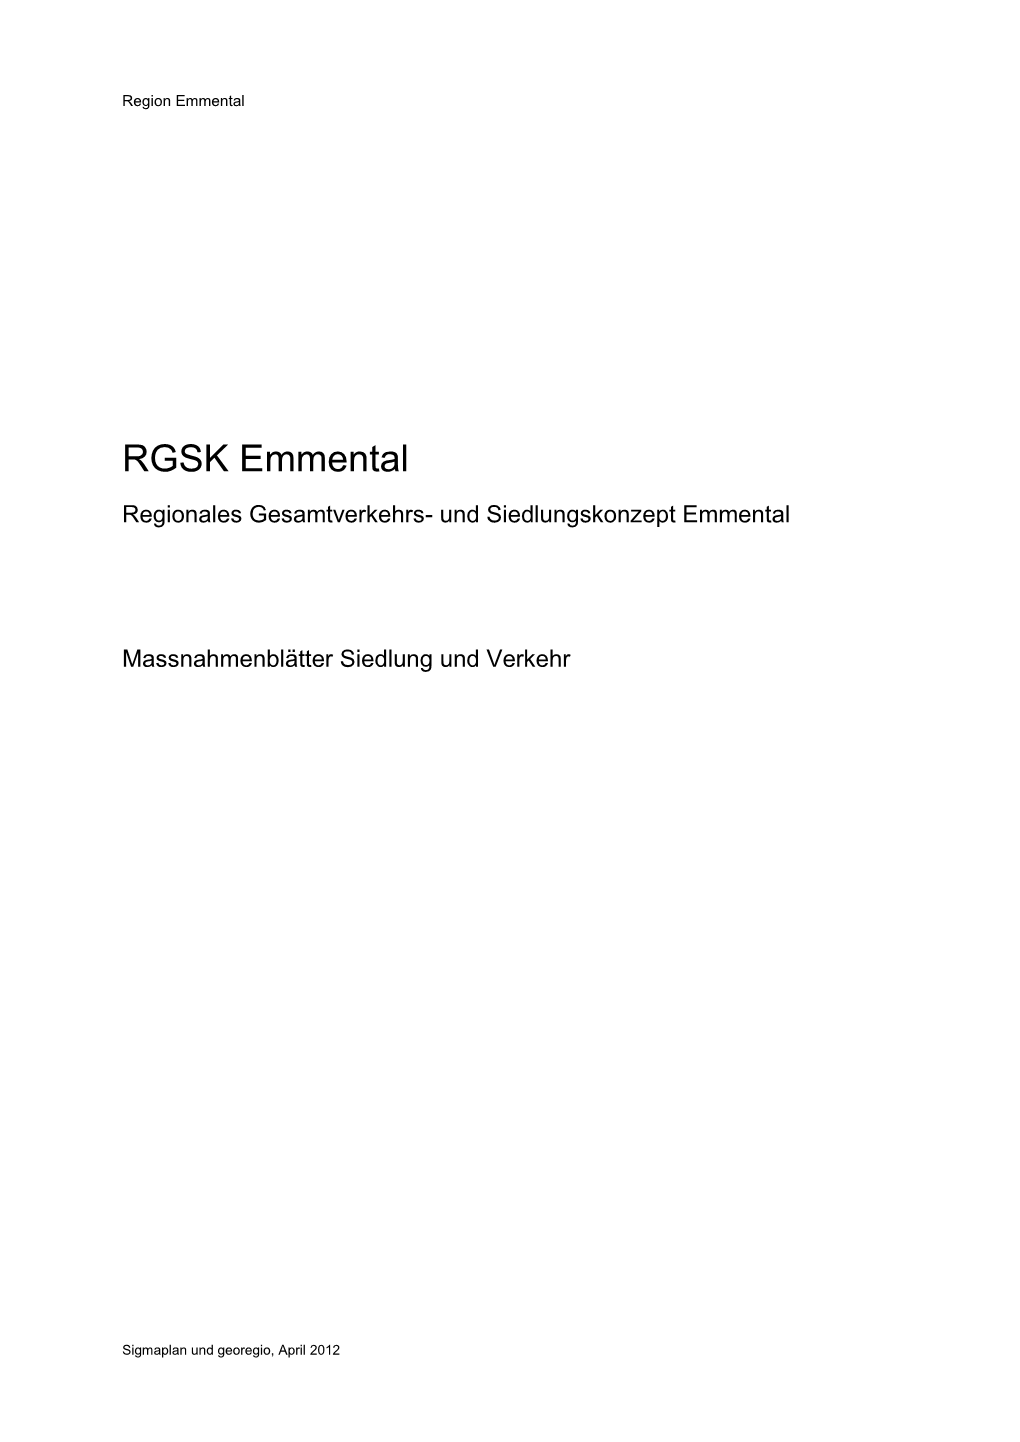 RGSK Emmental